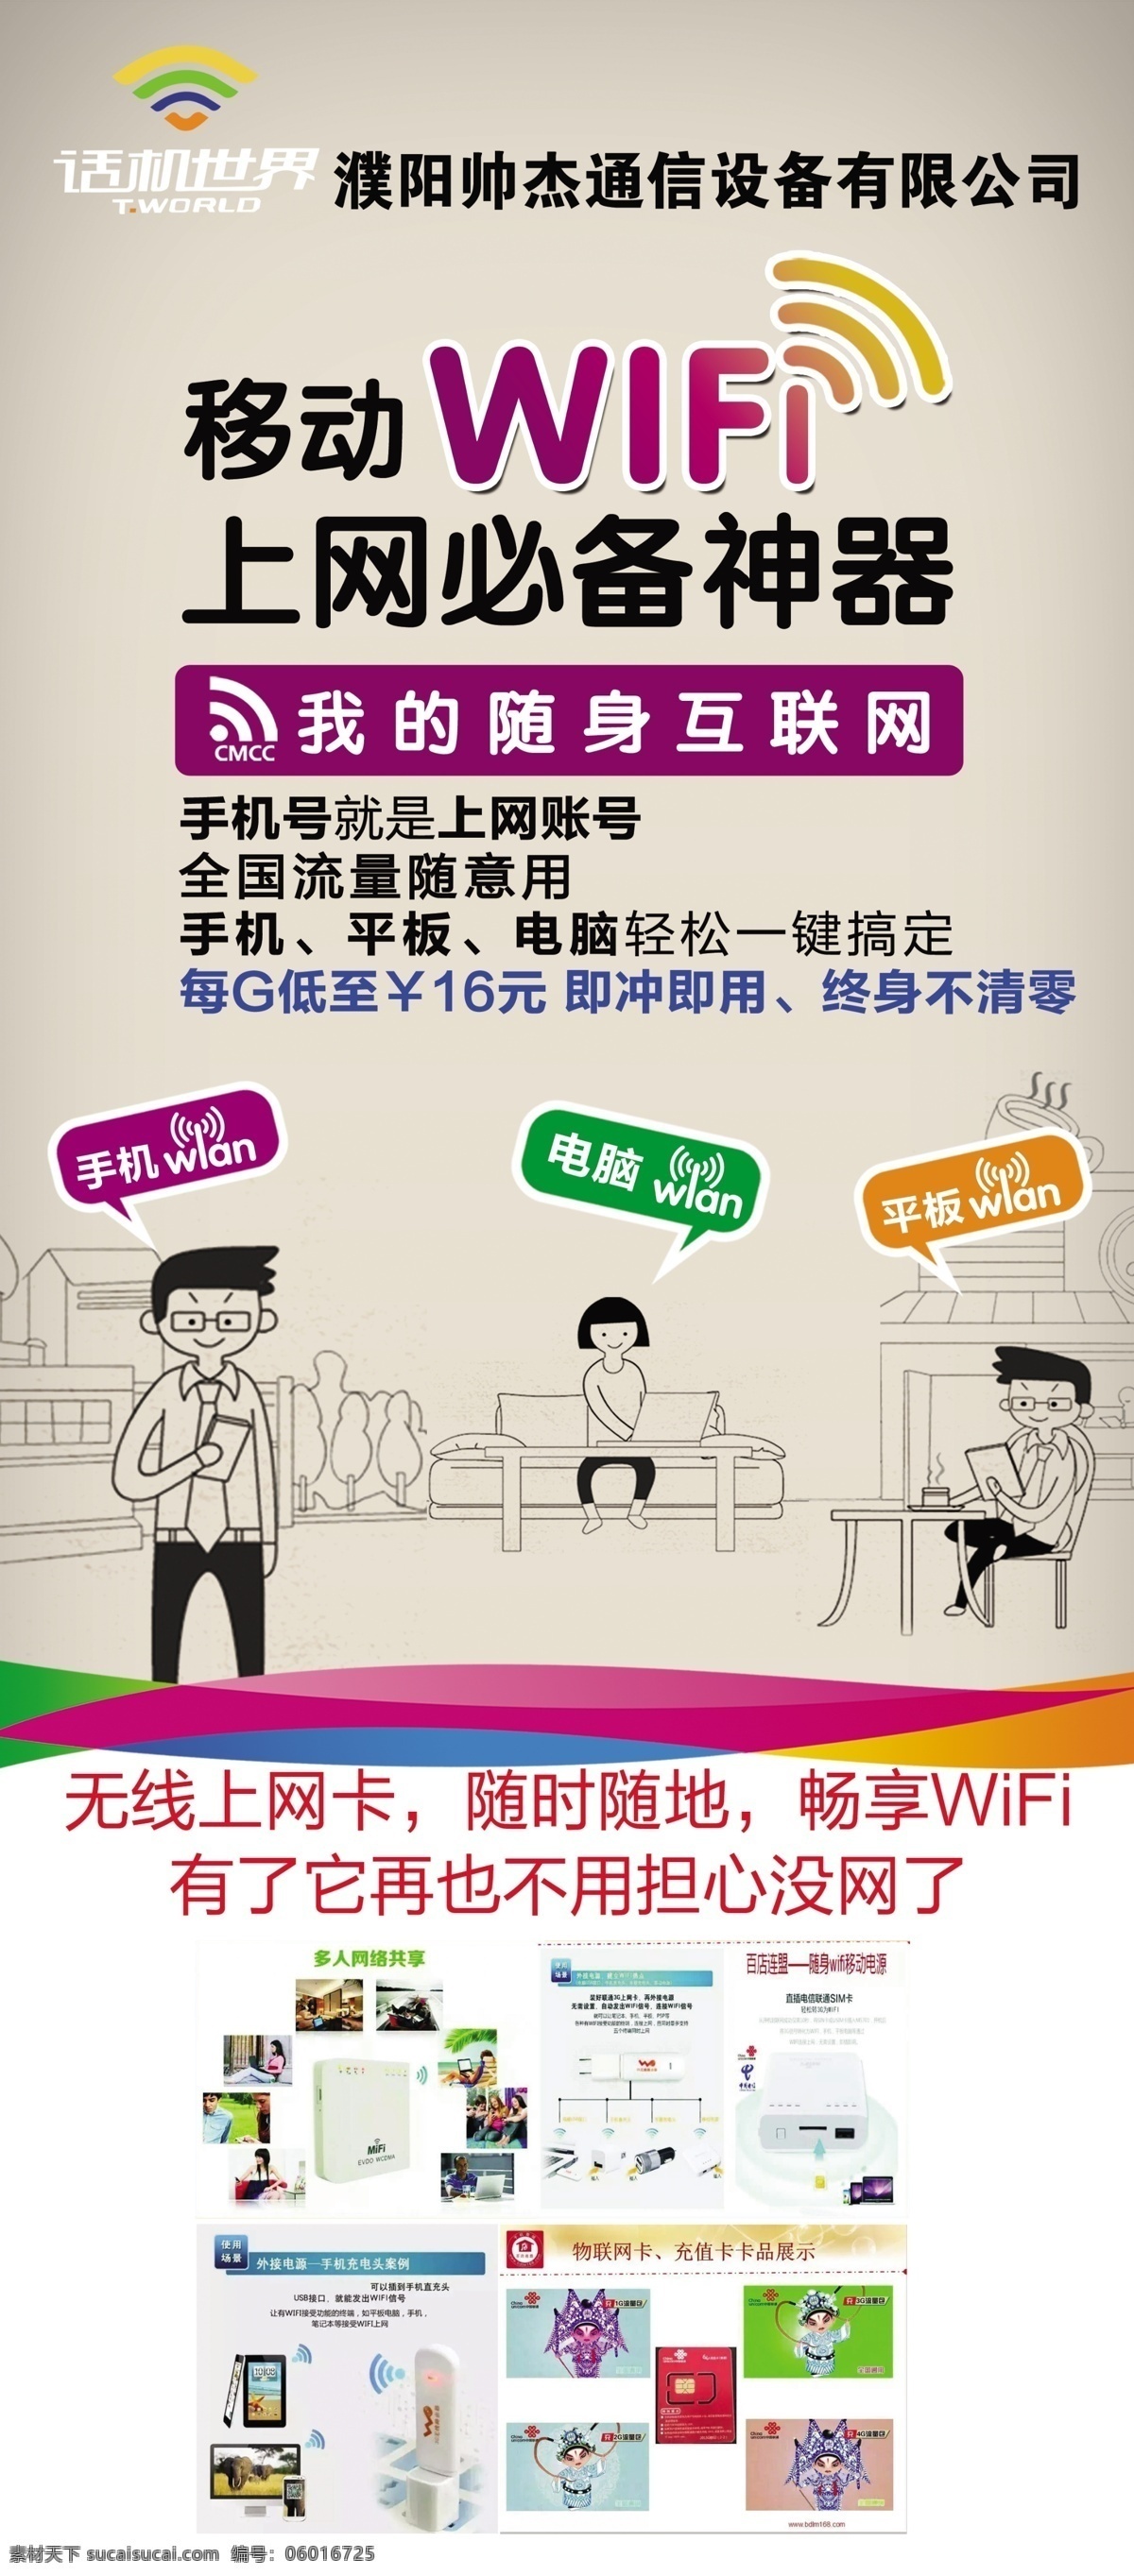 濮阳 帅 杰 通信设备 有限公司 展架2 移动wifi 上网卡 随身互联网 上网卡展架 白色